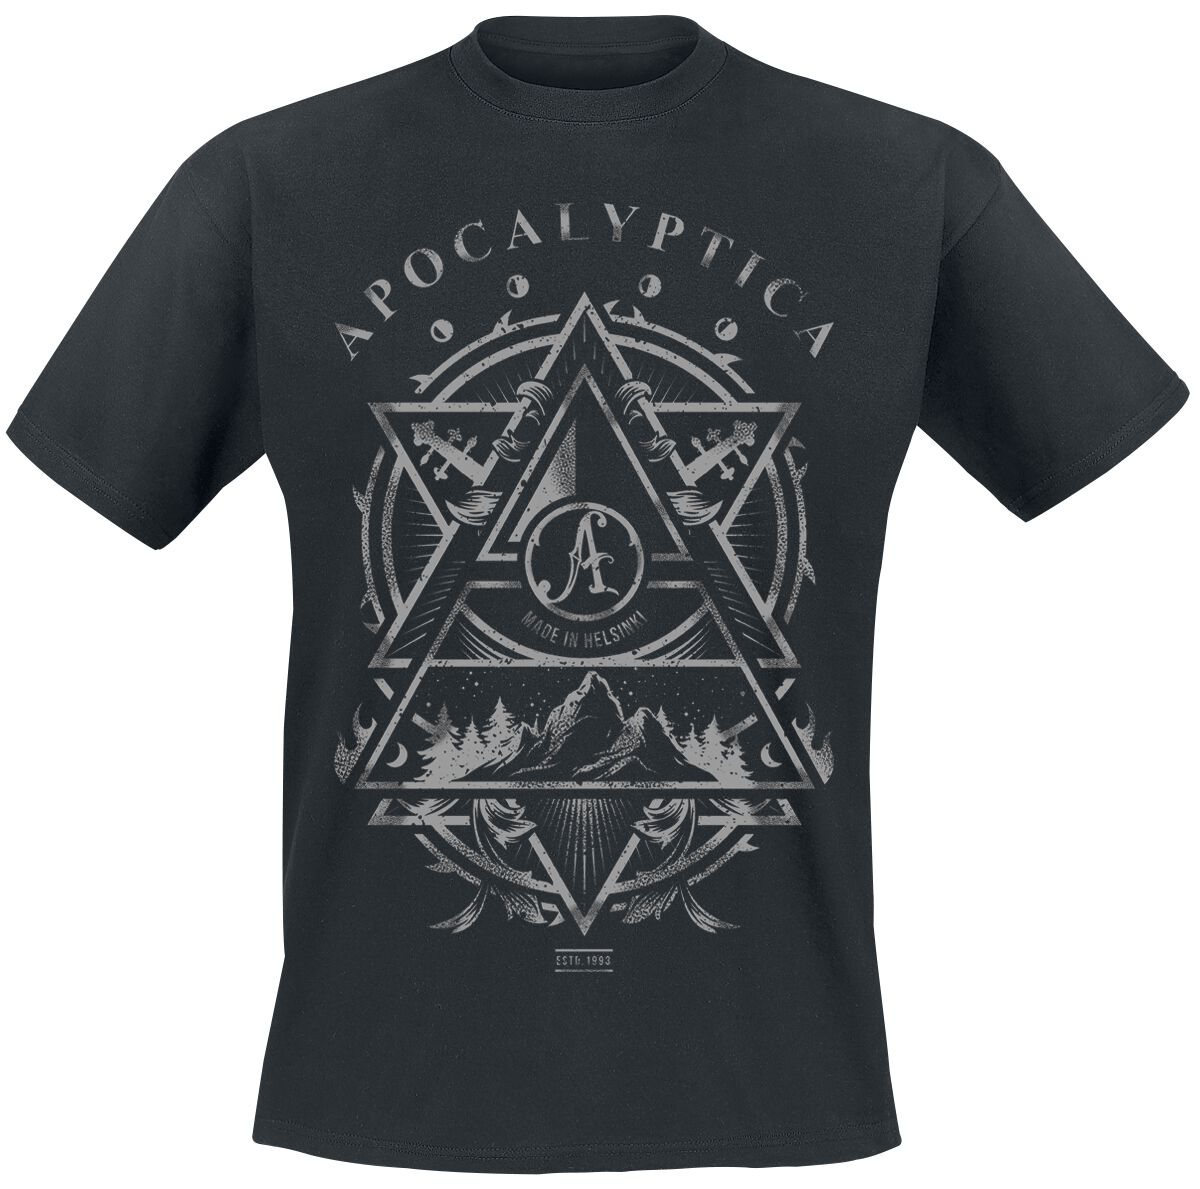 Apocalyptica T-Shirt - Made In Helsinki - S bis XXL - für Männer - Größe XL - schwarz  - Lizenziertes Merchandise! von Apocalyptica